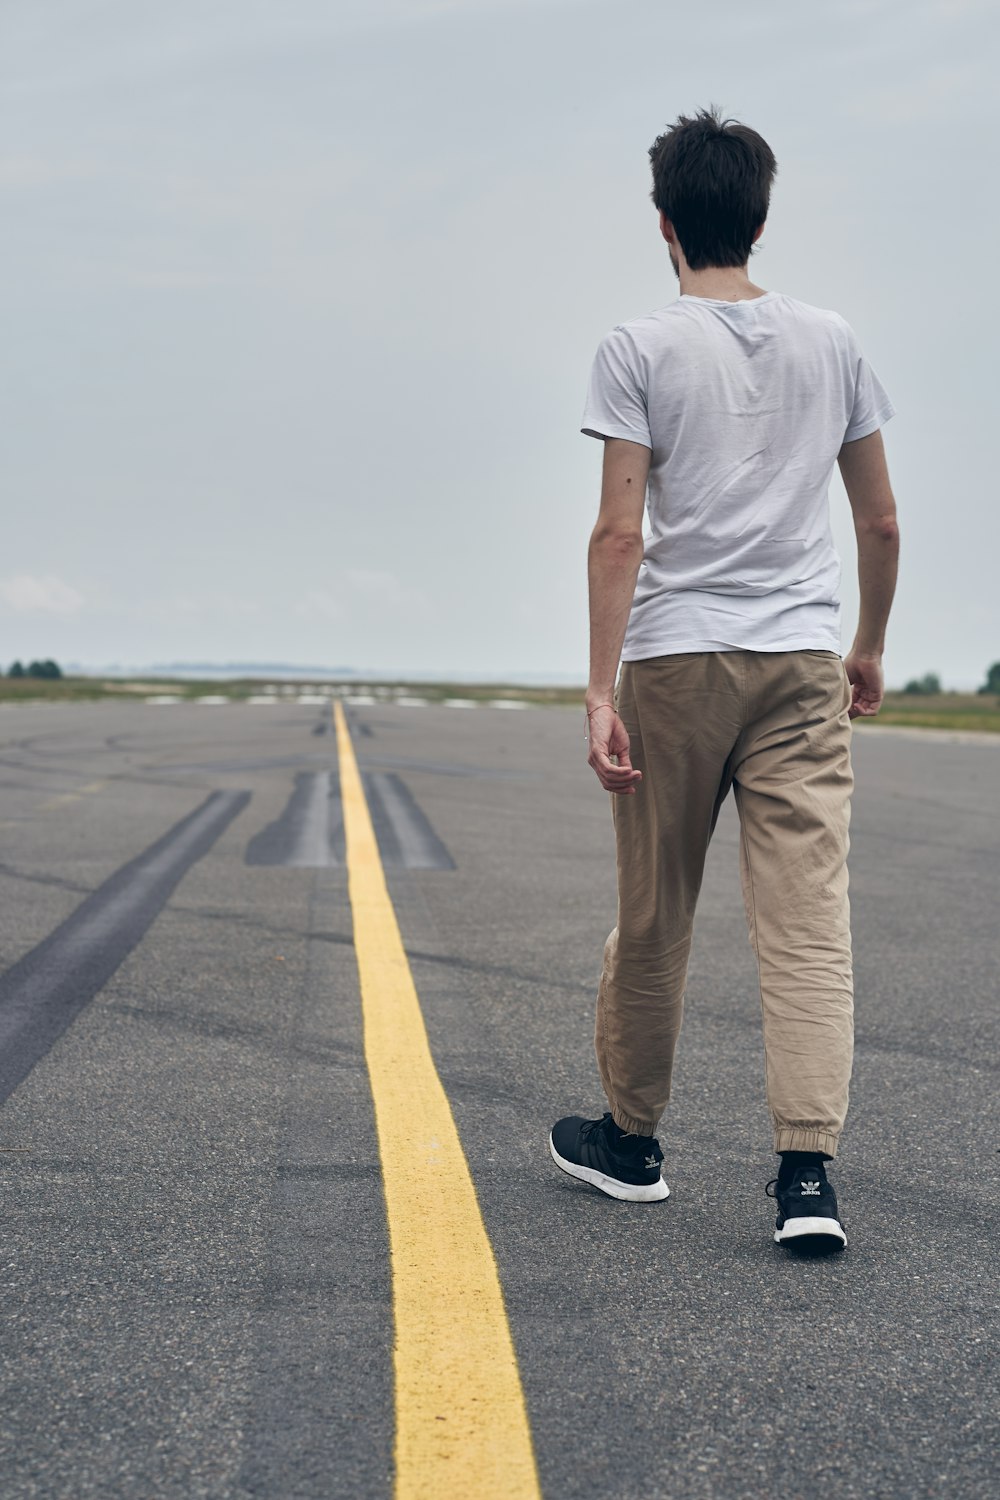 흰색 티셔츠와 갈색 바지를 입은 남자가 낮에 도로에 서 있다